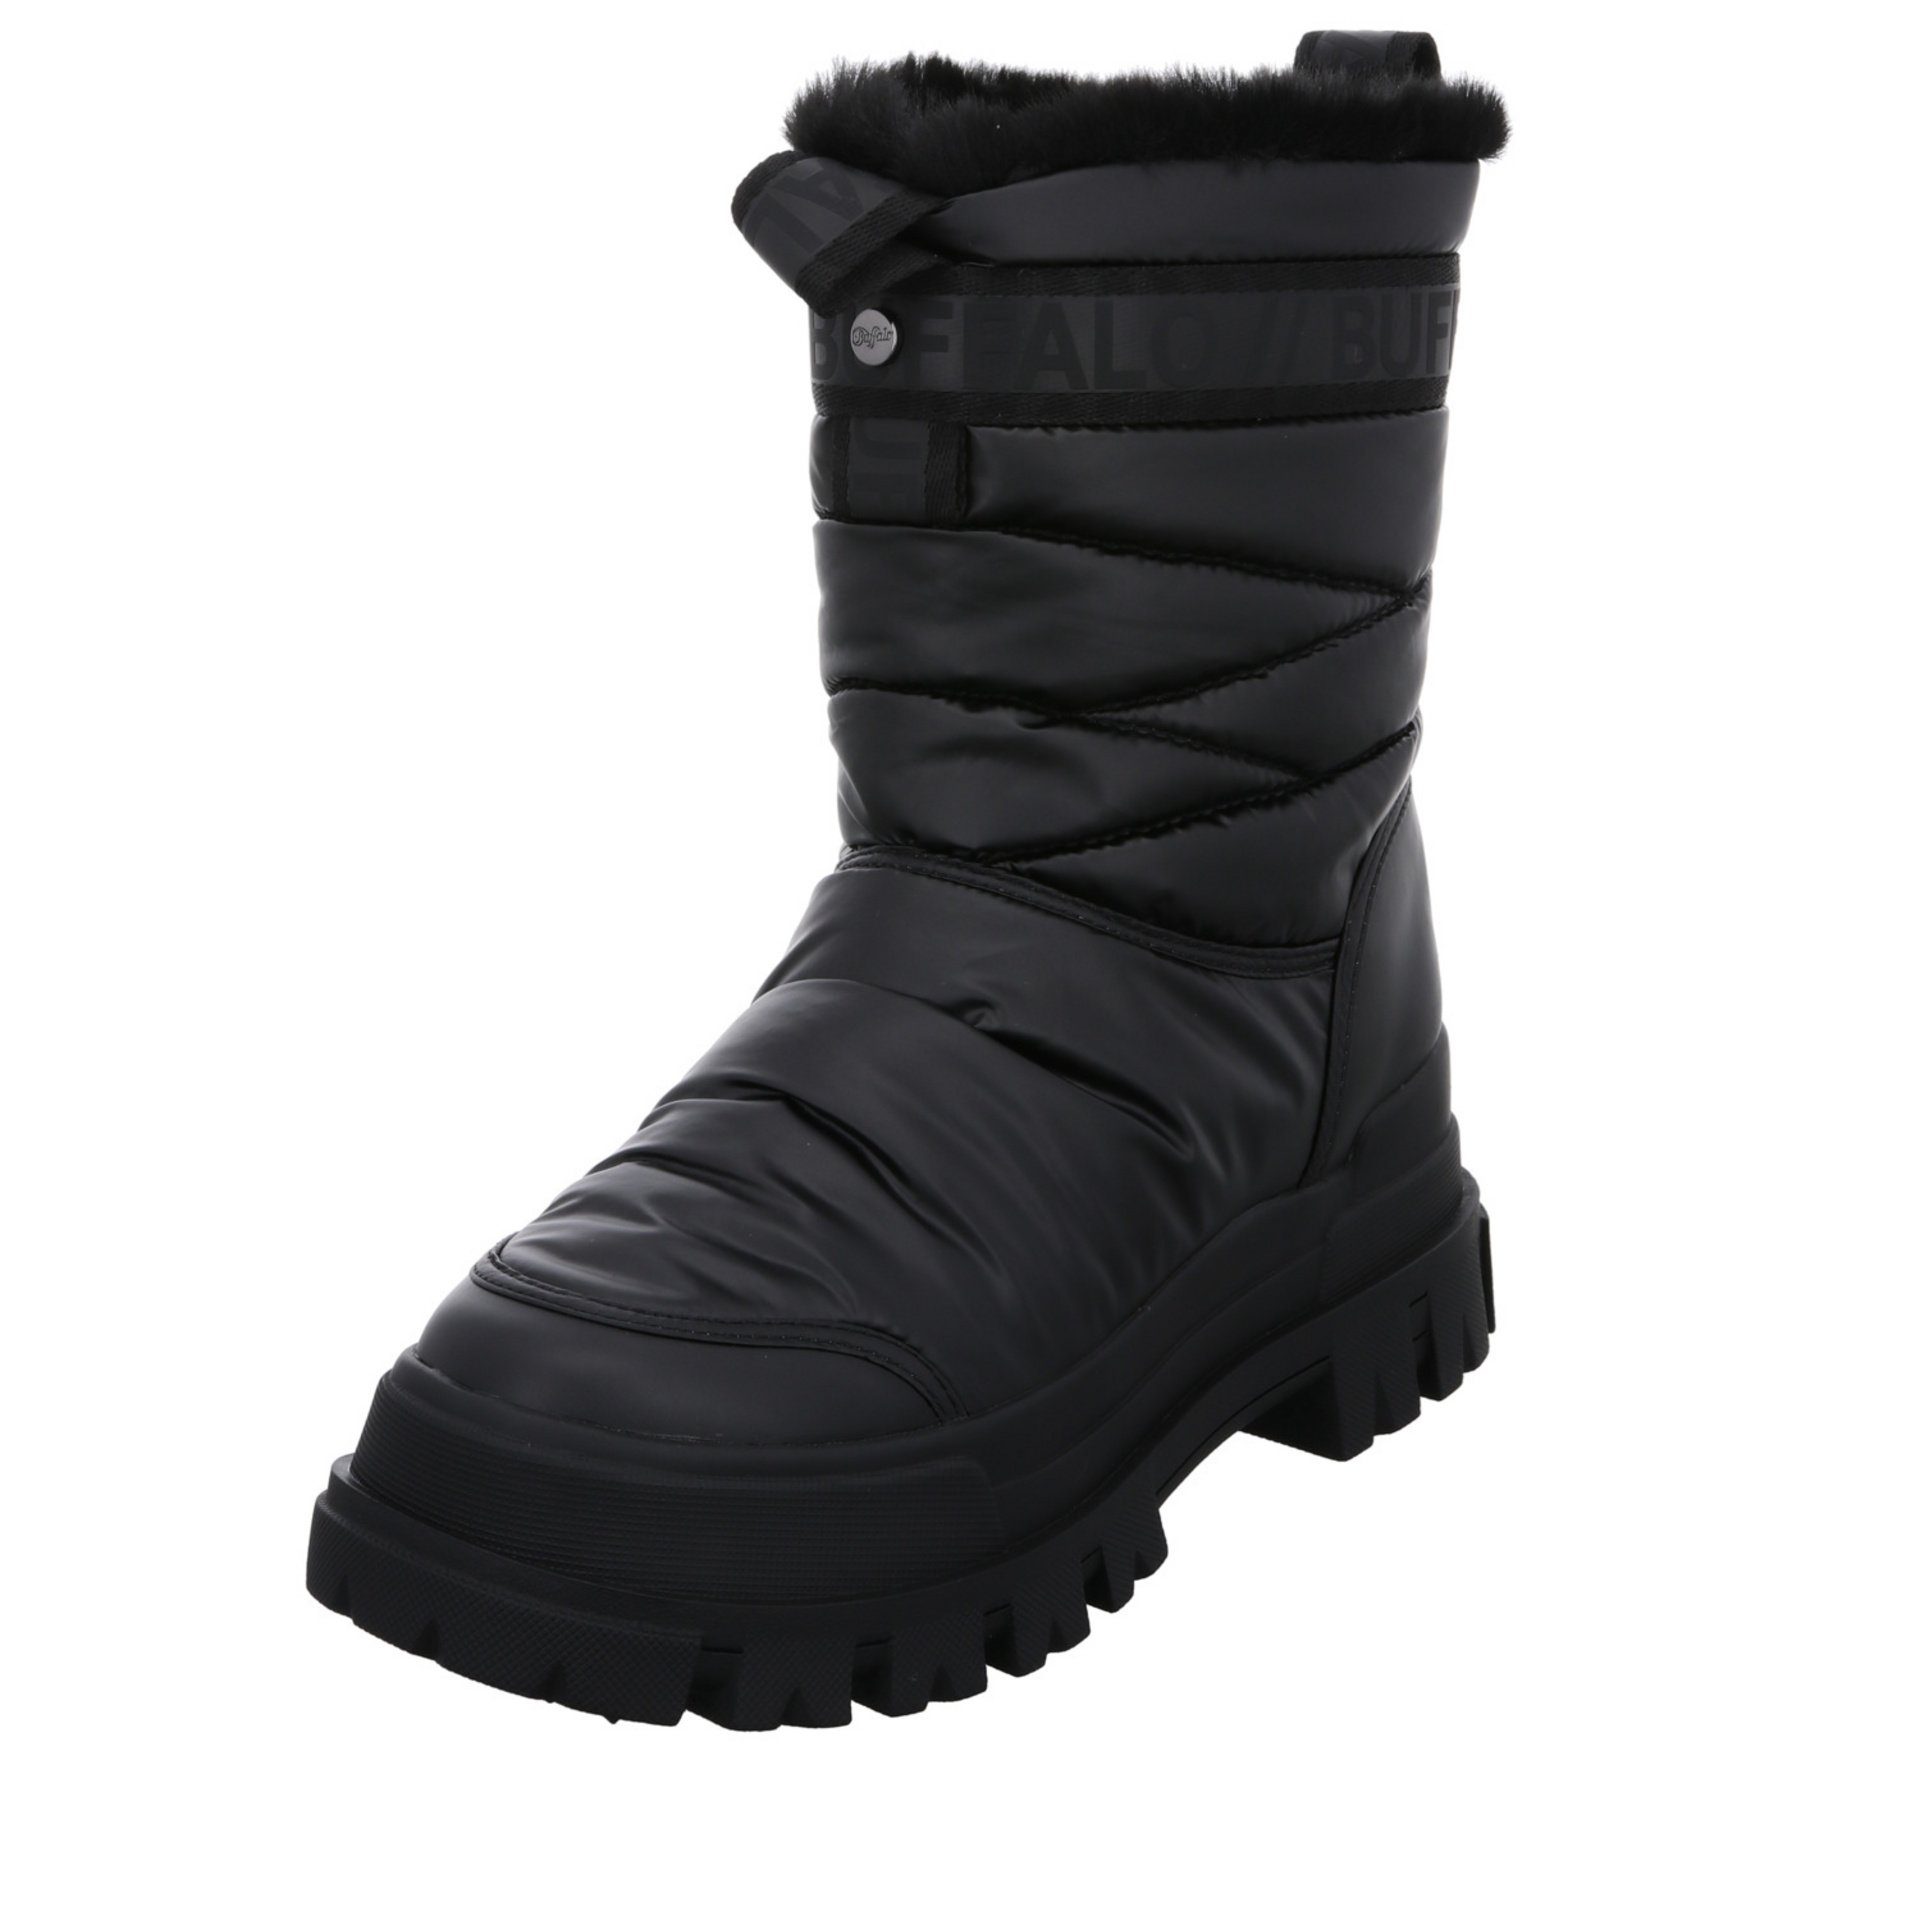 Buffalo Aspha Quilt Boots Logoschriftzug Snowboots Synthetikkombination | Stiefeletten